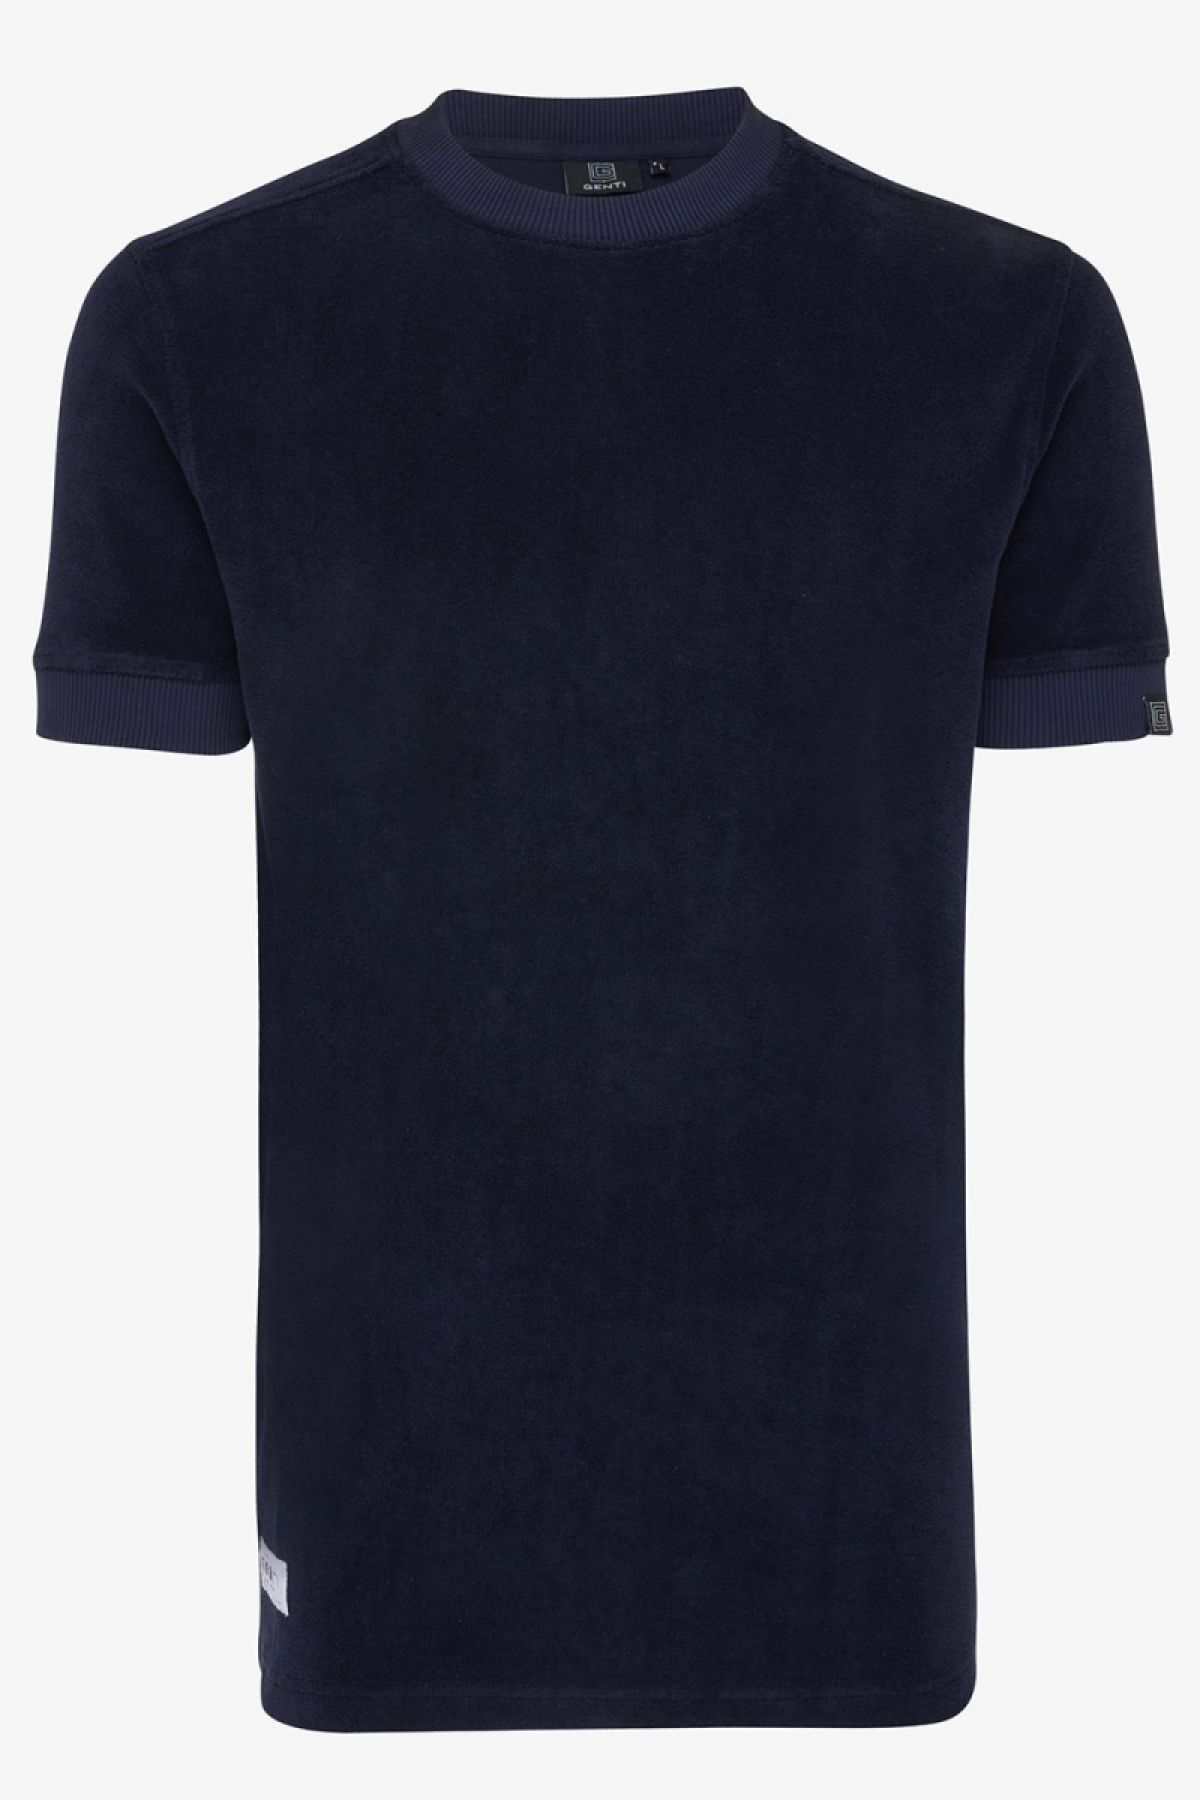 Badstof T-shirt donkerblauw